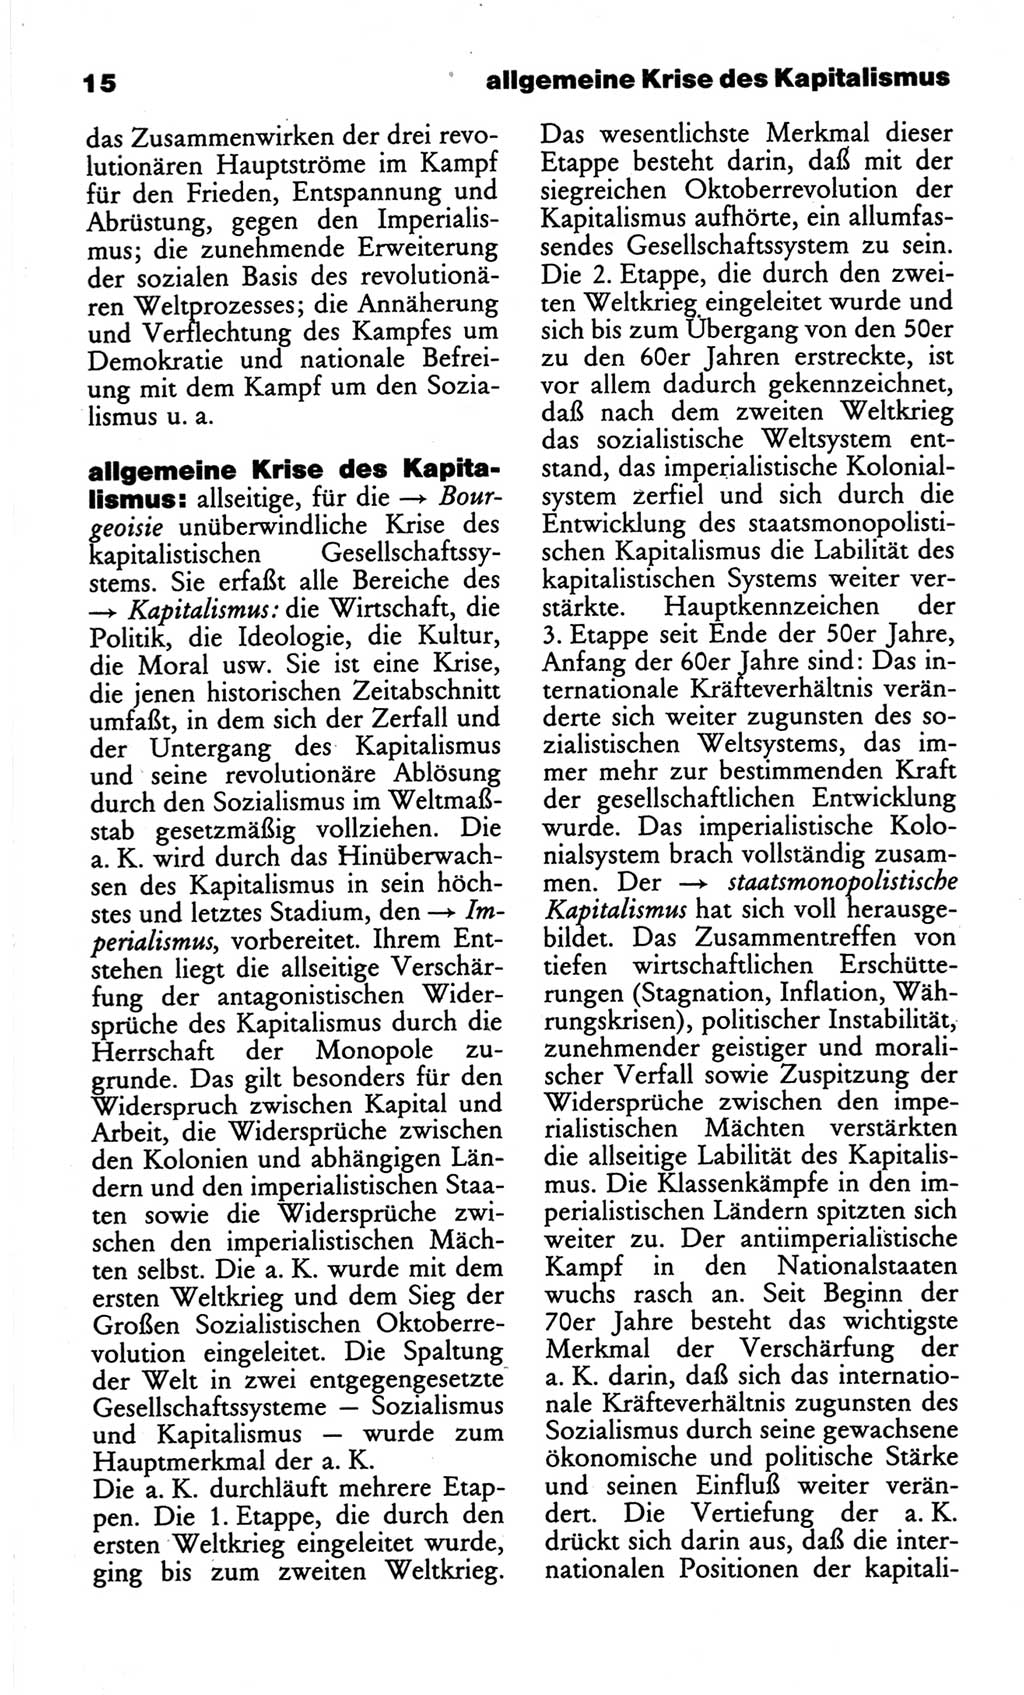 Wörterbuch des wissenschaftlichen Kommunismus [Deutsche Demokratische Republik (DDR)] 1982, Seite 15 (Wb. wiss. Komm. DDR 1982, S. 15)